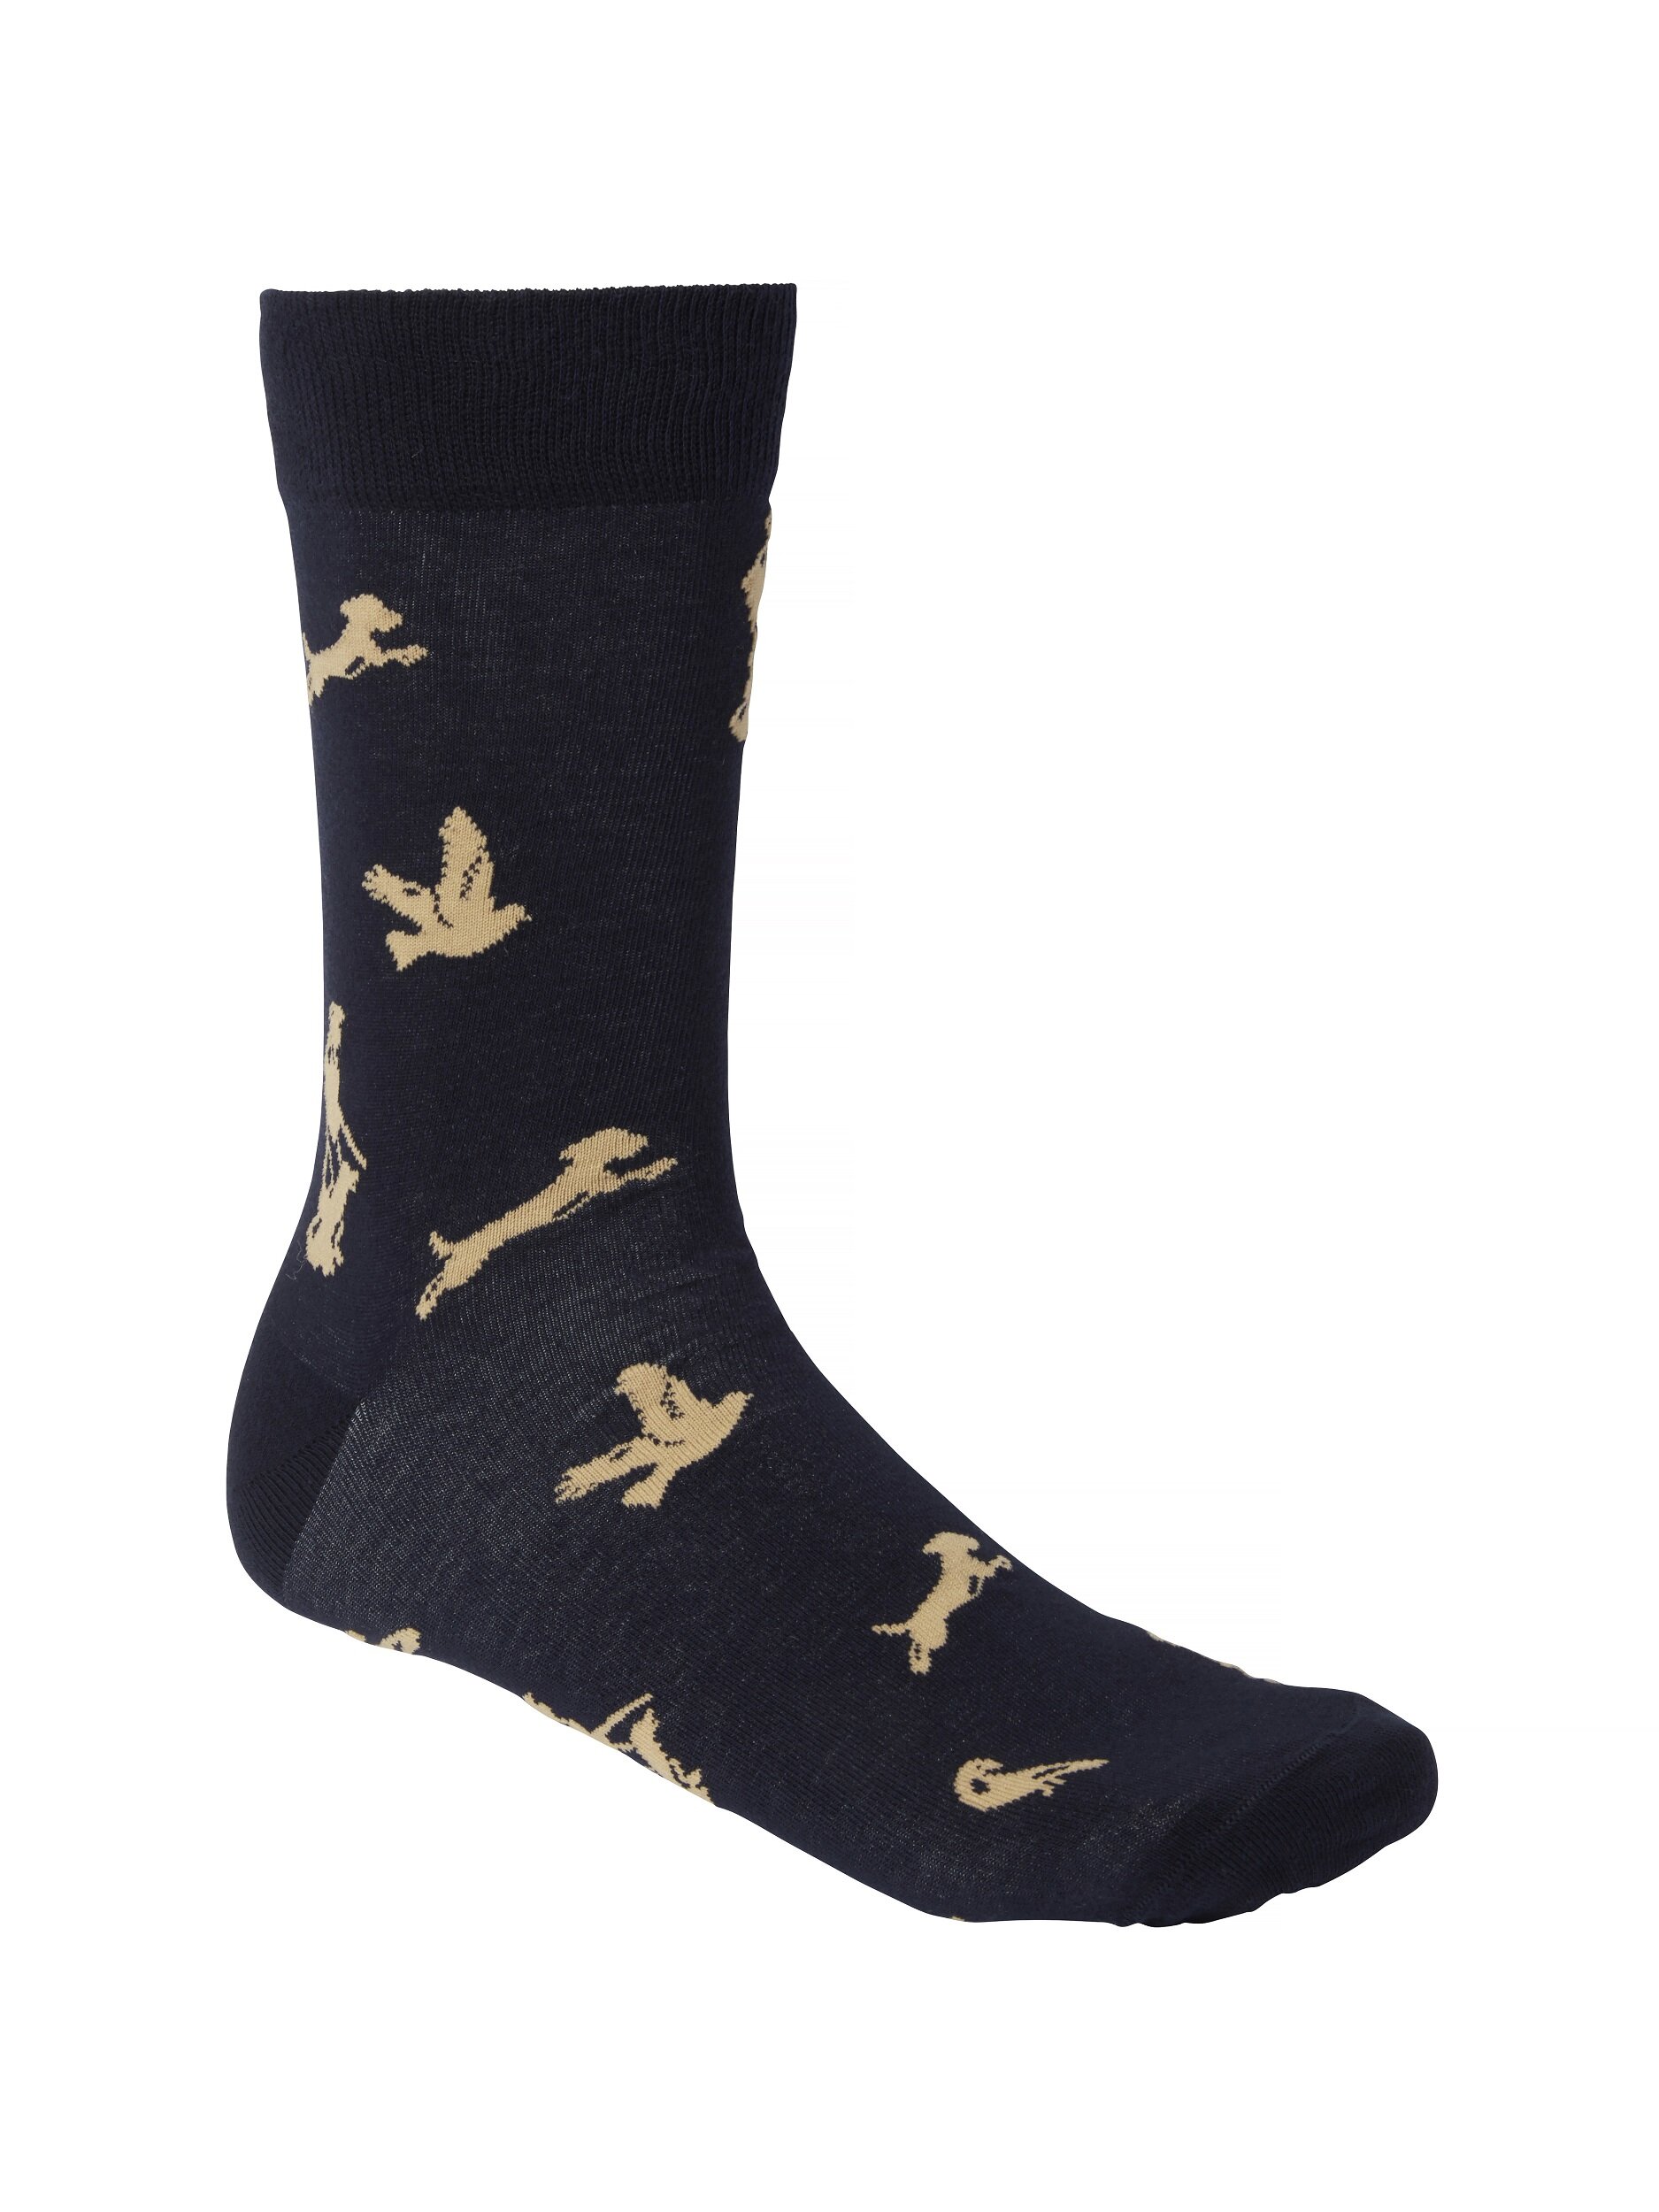 Select Pomeroy Socks